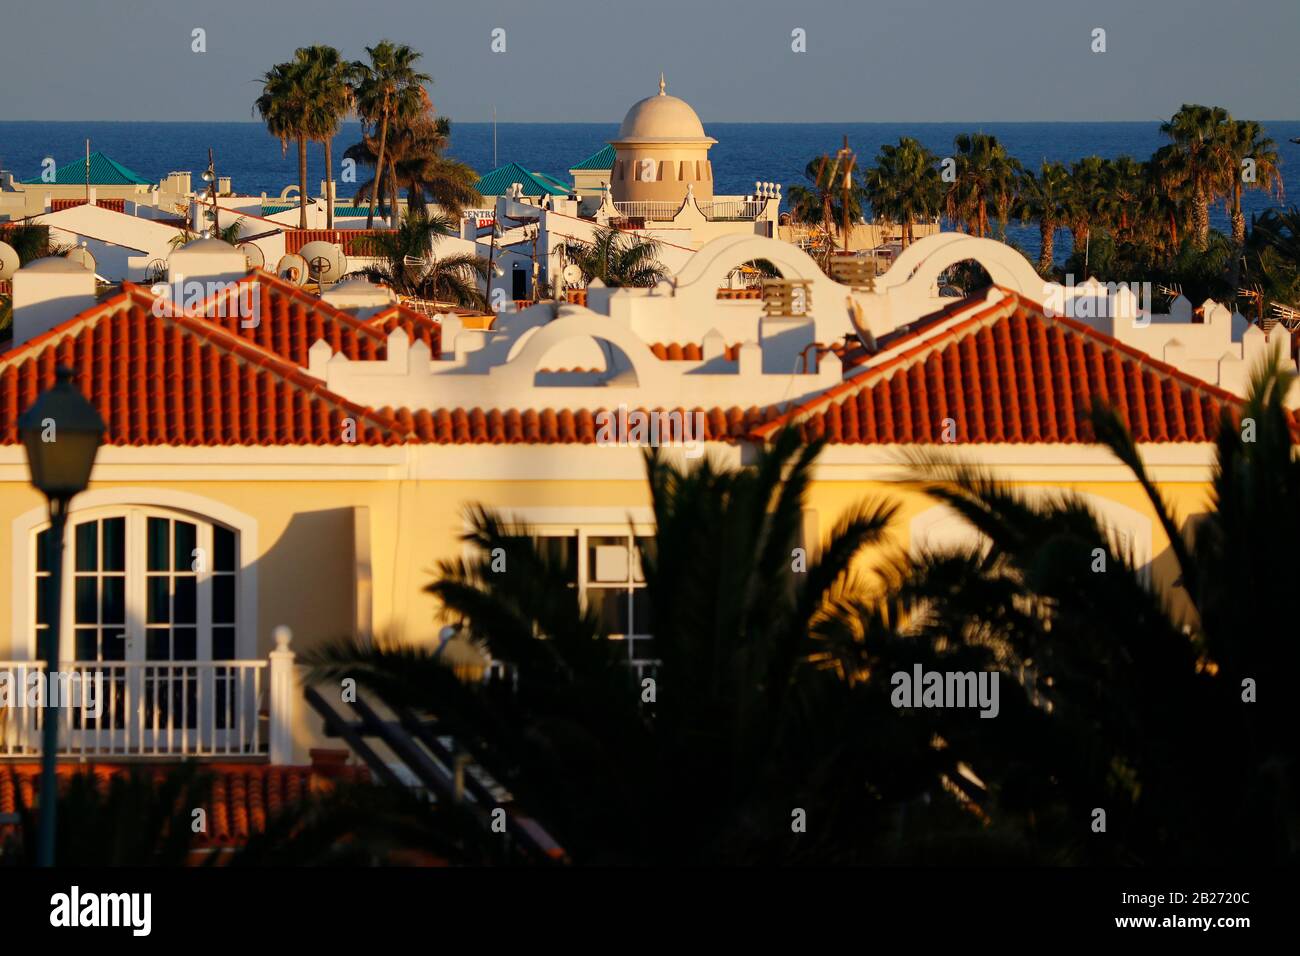 Impressionen: Caleta de Fuste, Fuerteventura, Kanarische Inseln, Spanien/ Fuerteventura, Canary Islands, Spain  (nur fuer redaktionelle Verwendung. Ke Stock Photo